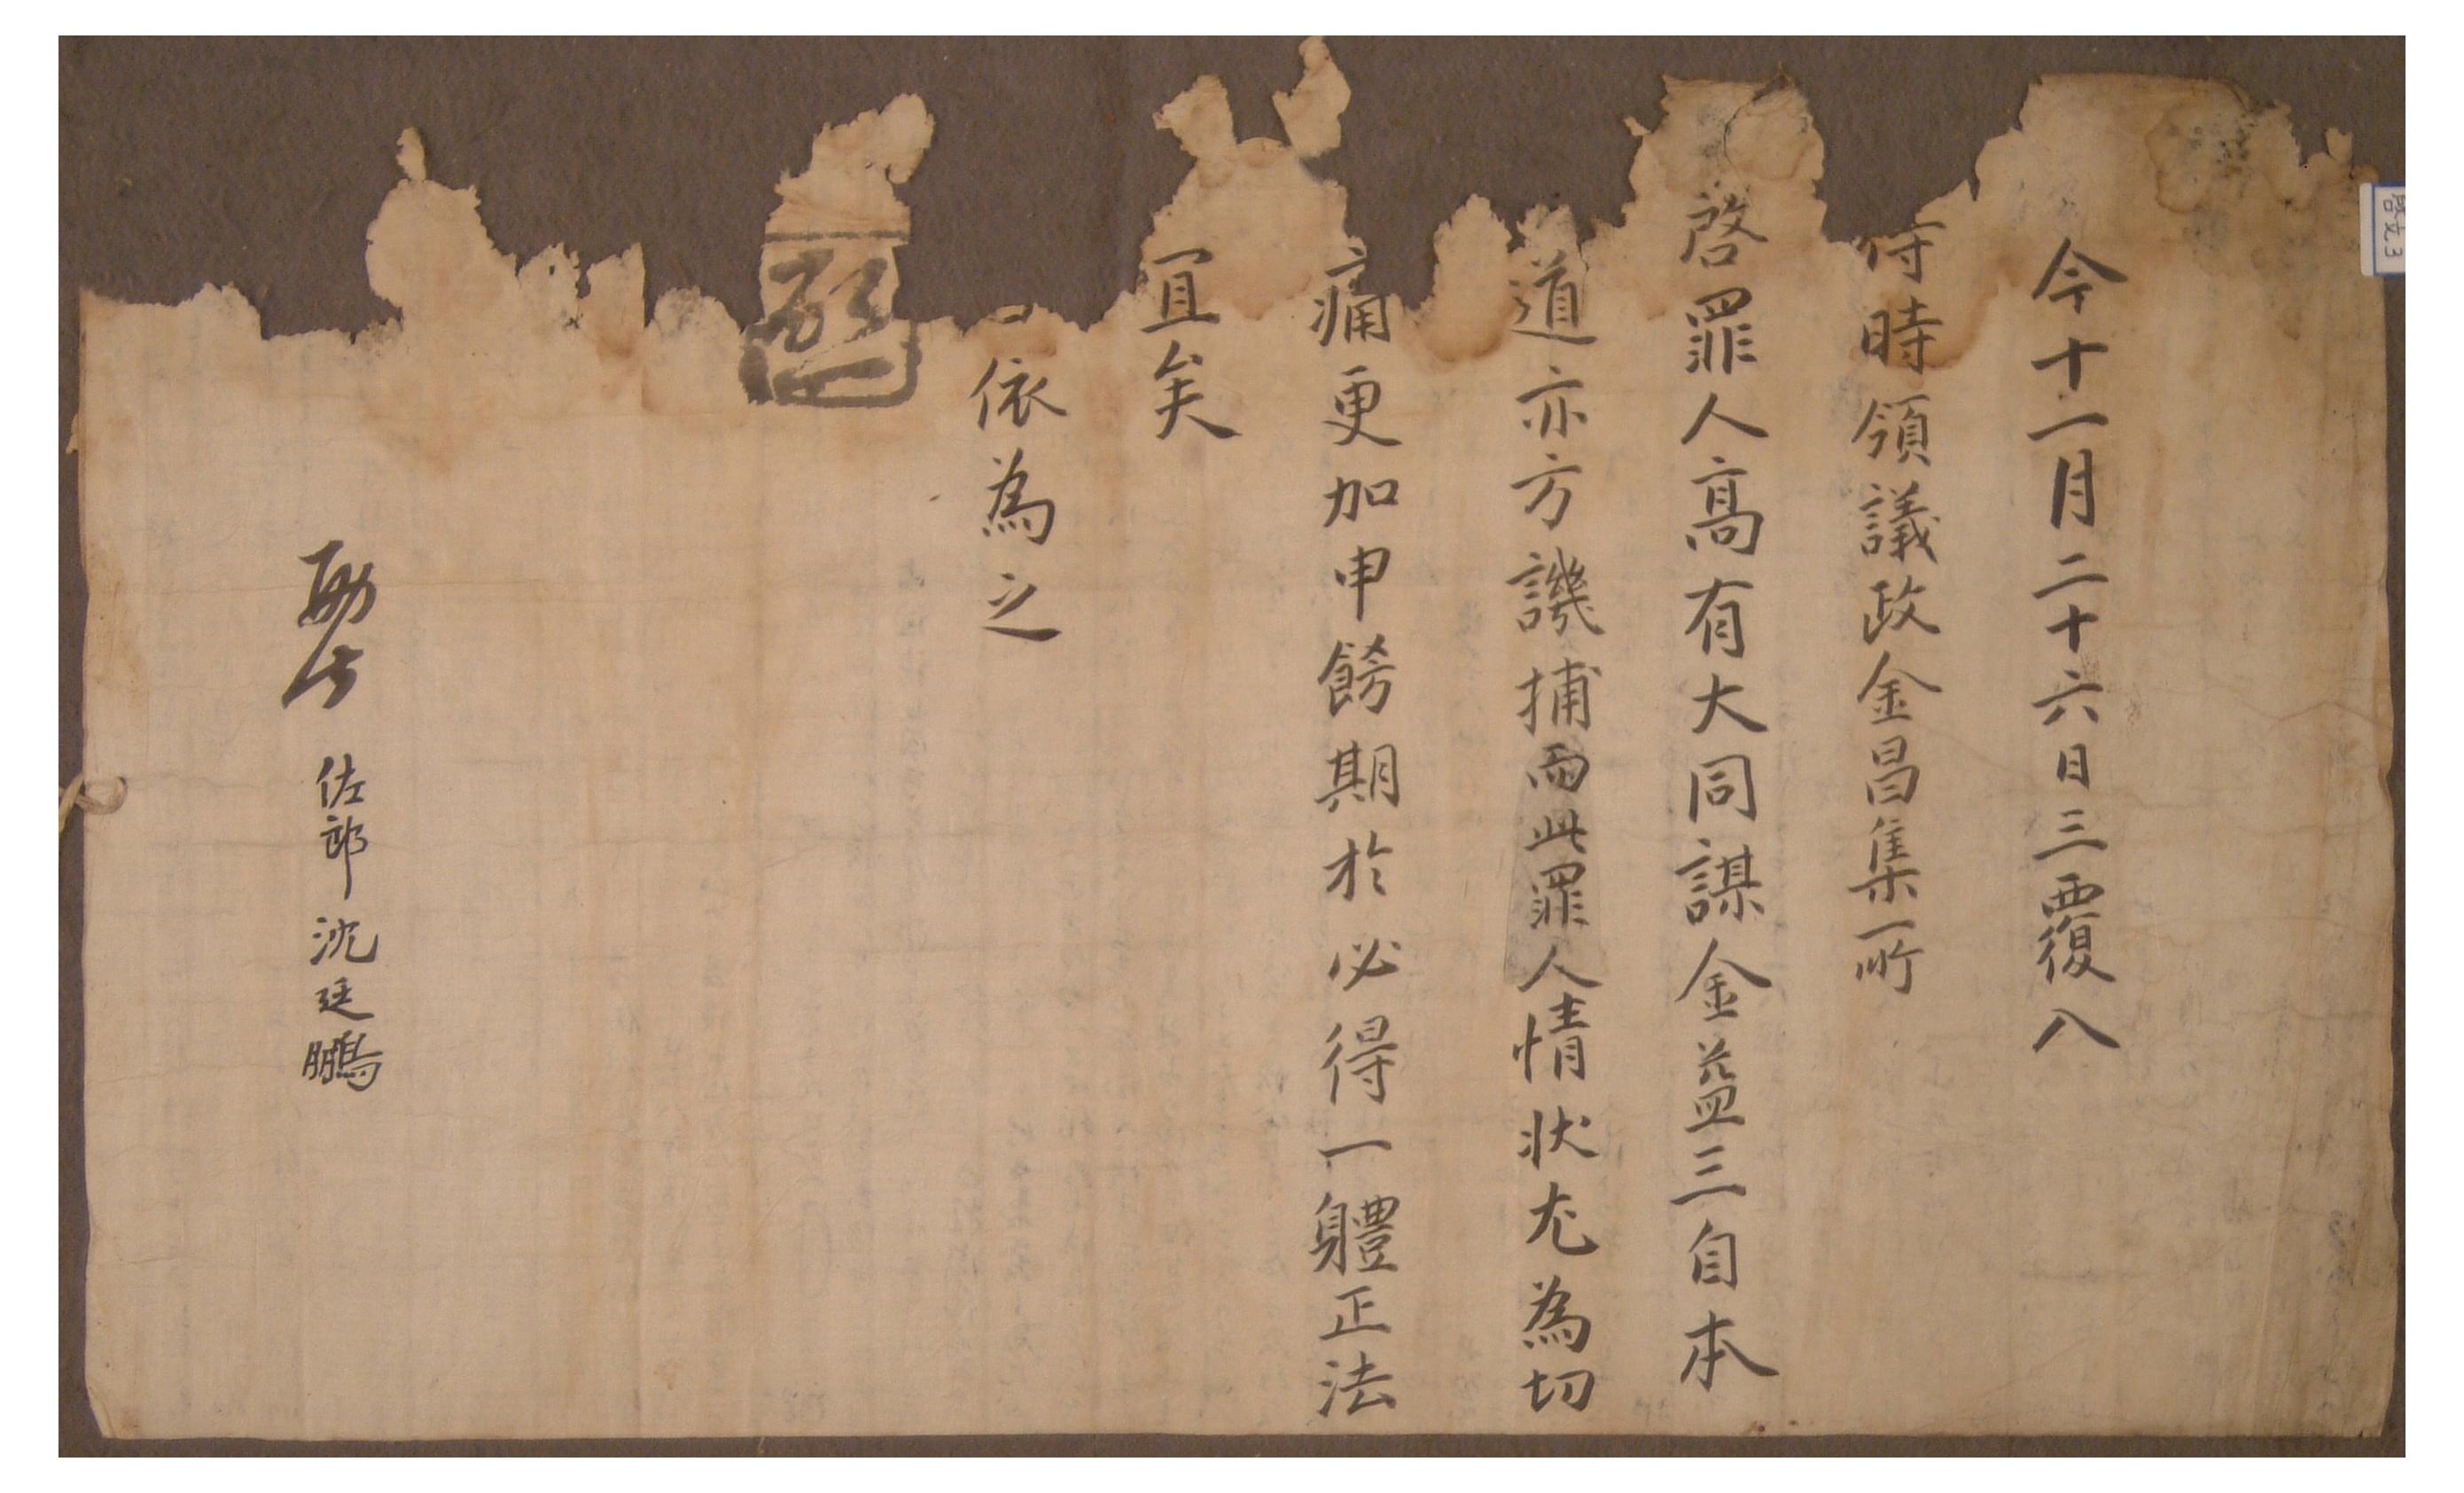 1721년에 영의정 김창집이 살인사건 공모자에 대한 처벌을 요청한 계목